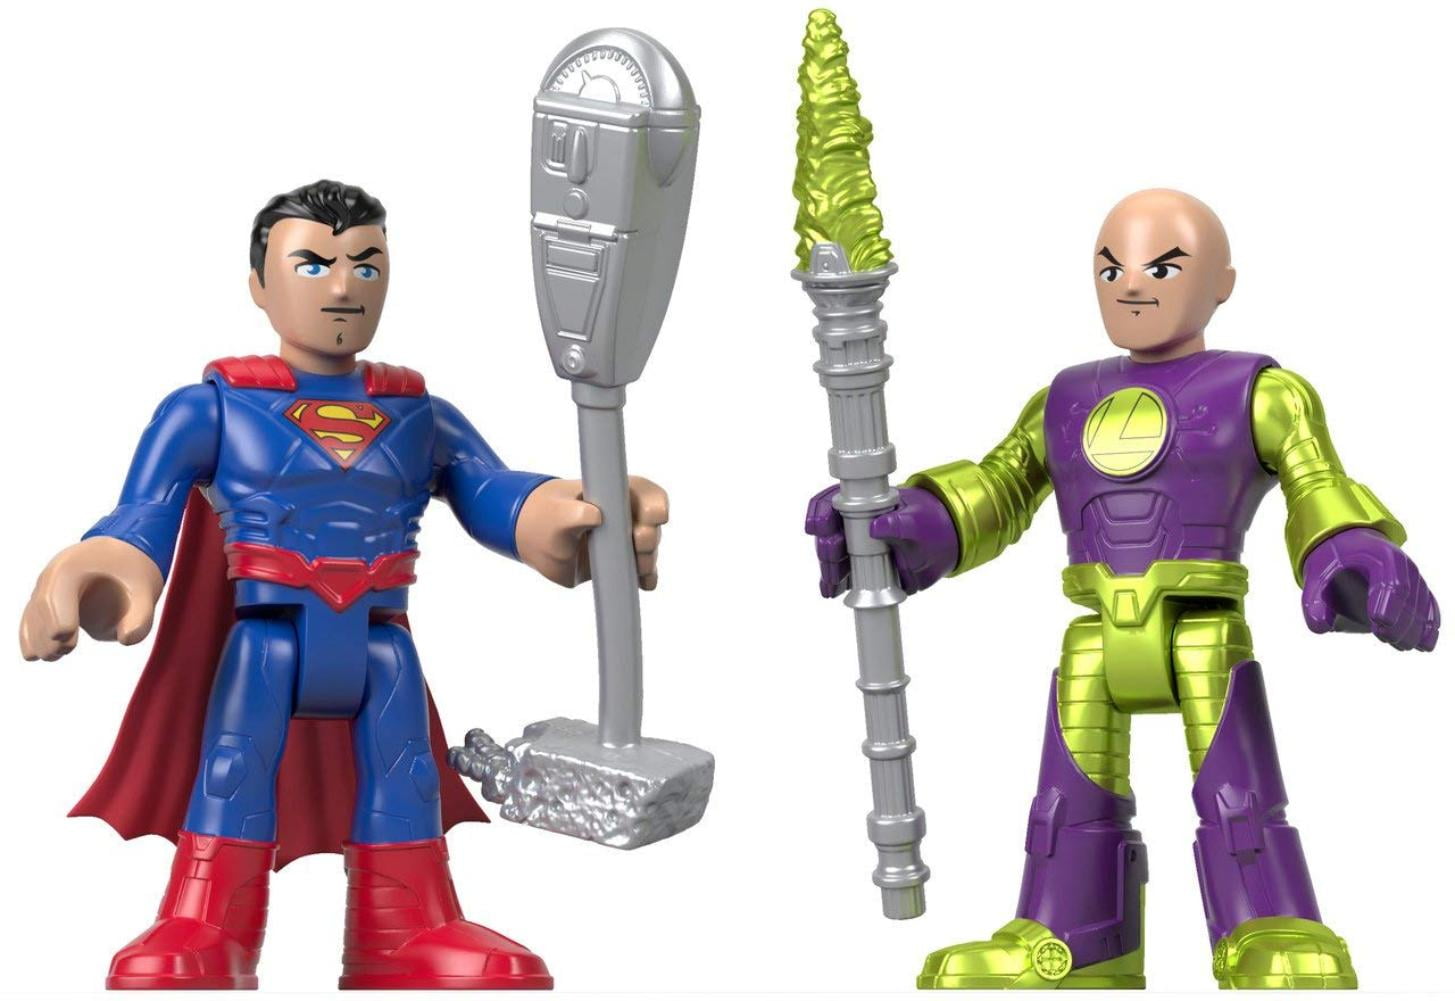 Imaginext DC Super Friends Fisher Price Lex Luthor robot suit kryptonite villain 